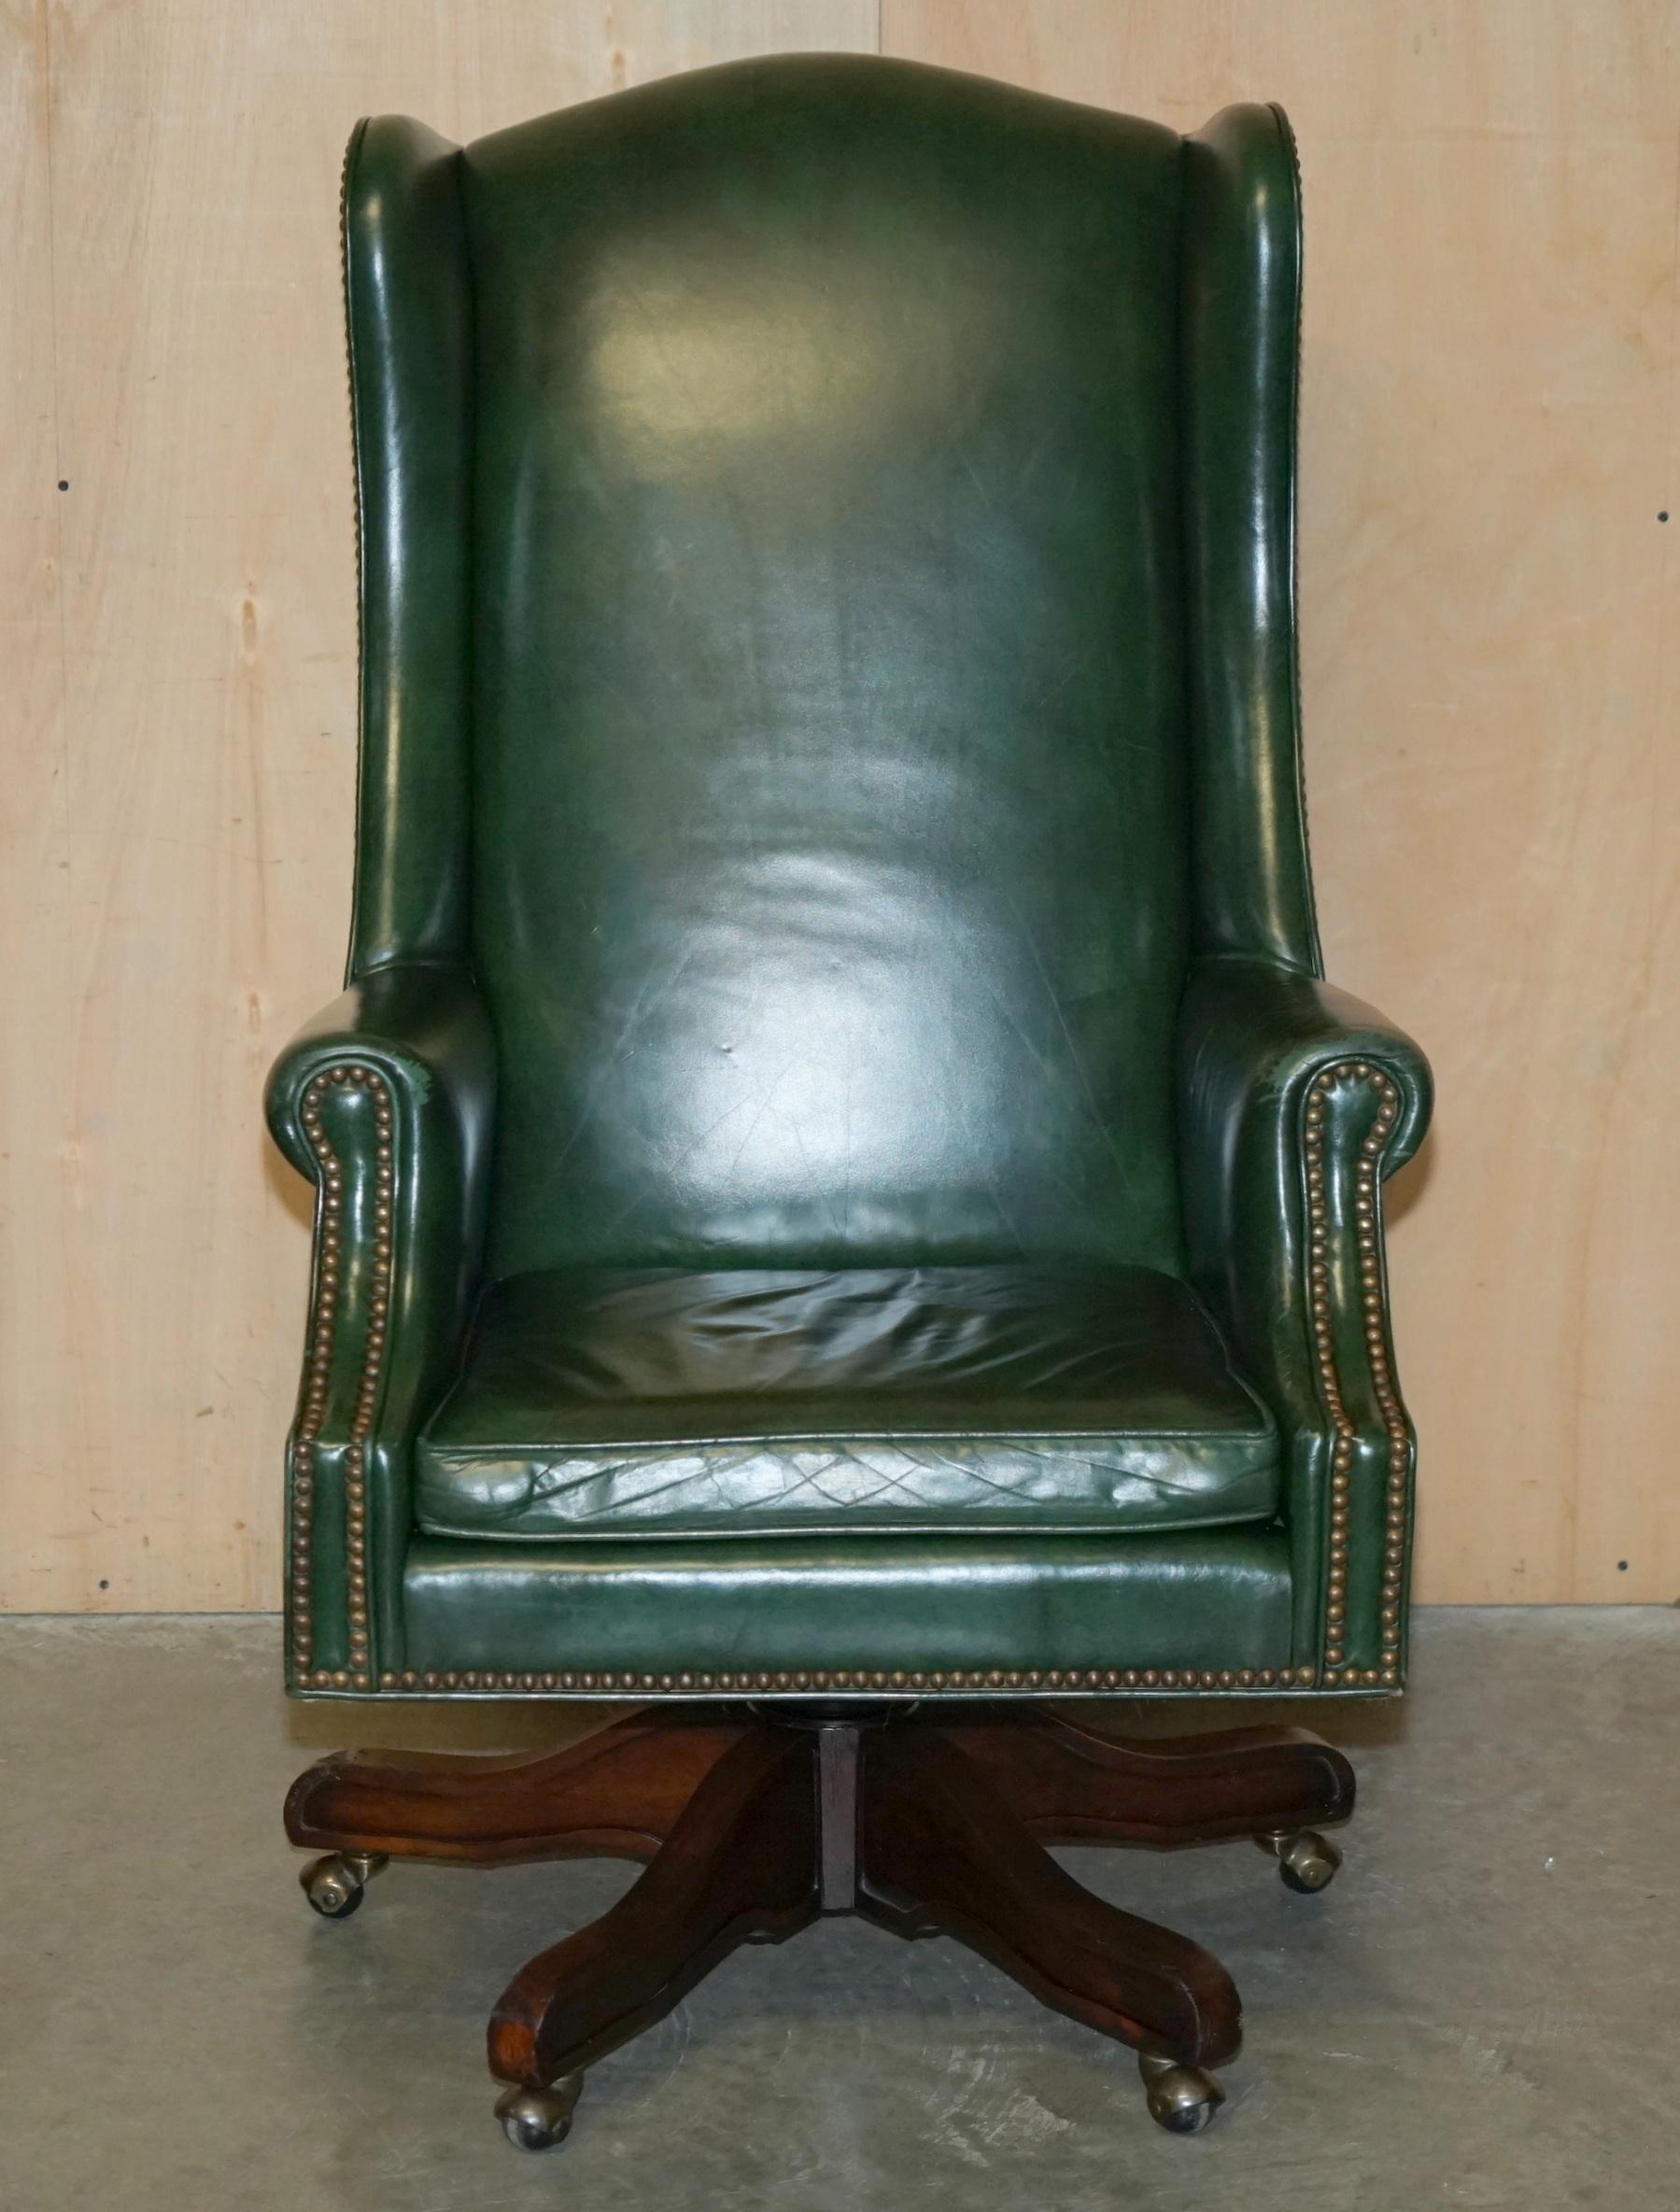 Royal House Antiques

The House Antiques a le plaisir de proposer à la vente ce très confortable fauteuil de bureau pivotant à dossier ailé en cuir vert Heritage. 

Veuillez noter que les frais de livraison indiqués ne sont qu'un guide, ils couvrent